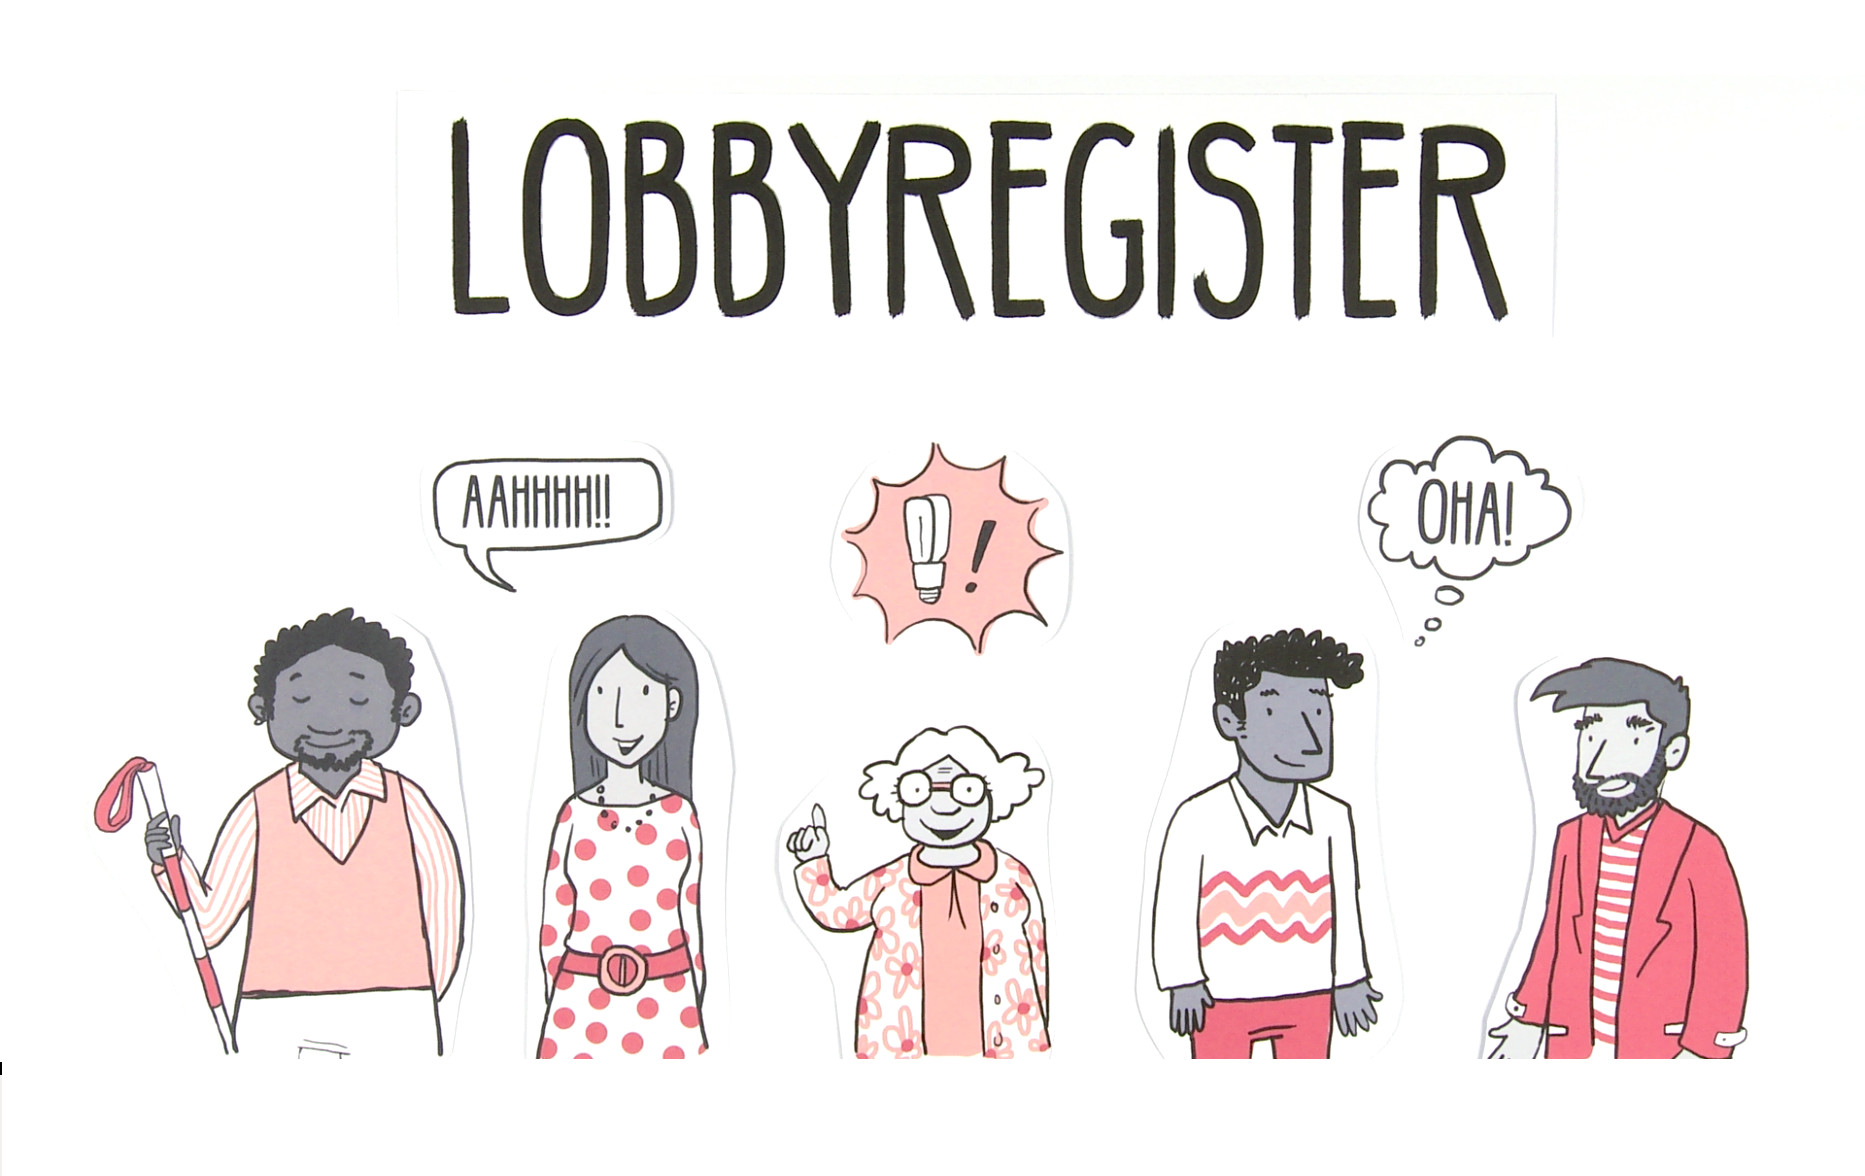 Lobbyregister_Intro.jpg